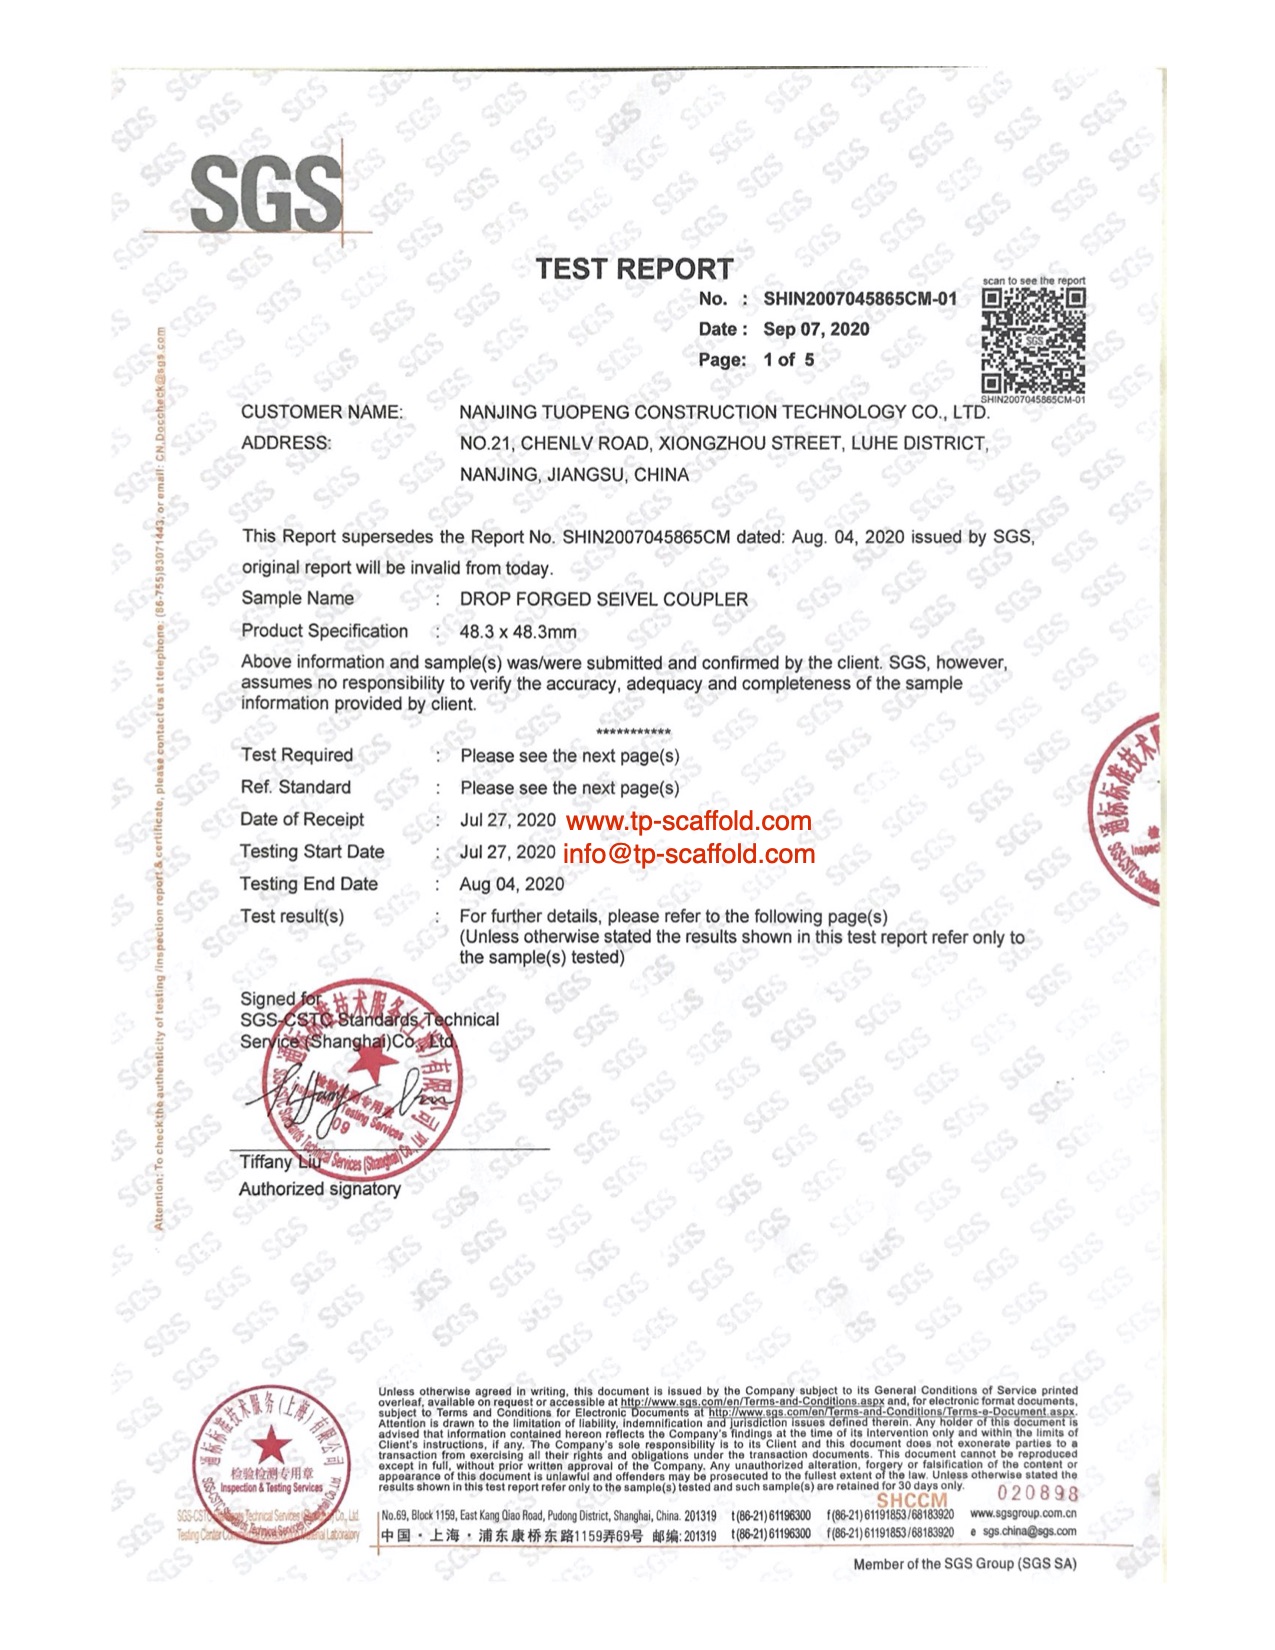 Swivel coupler EN74 Certificate 1